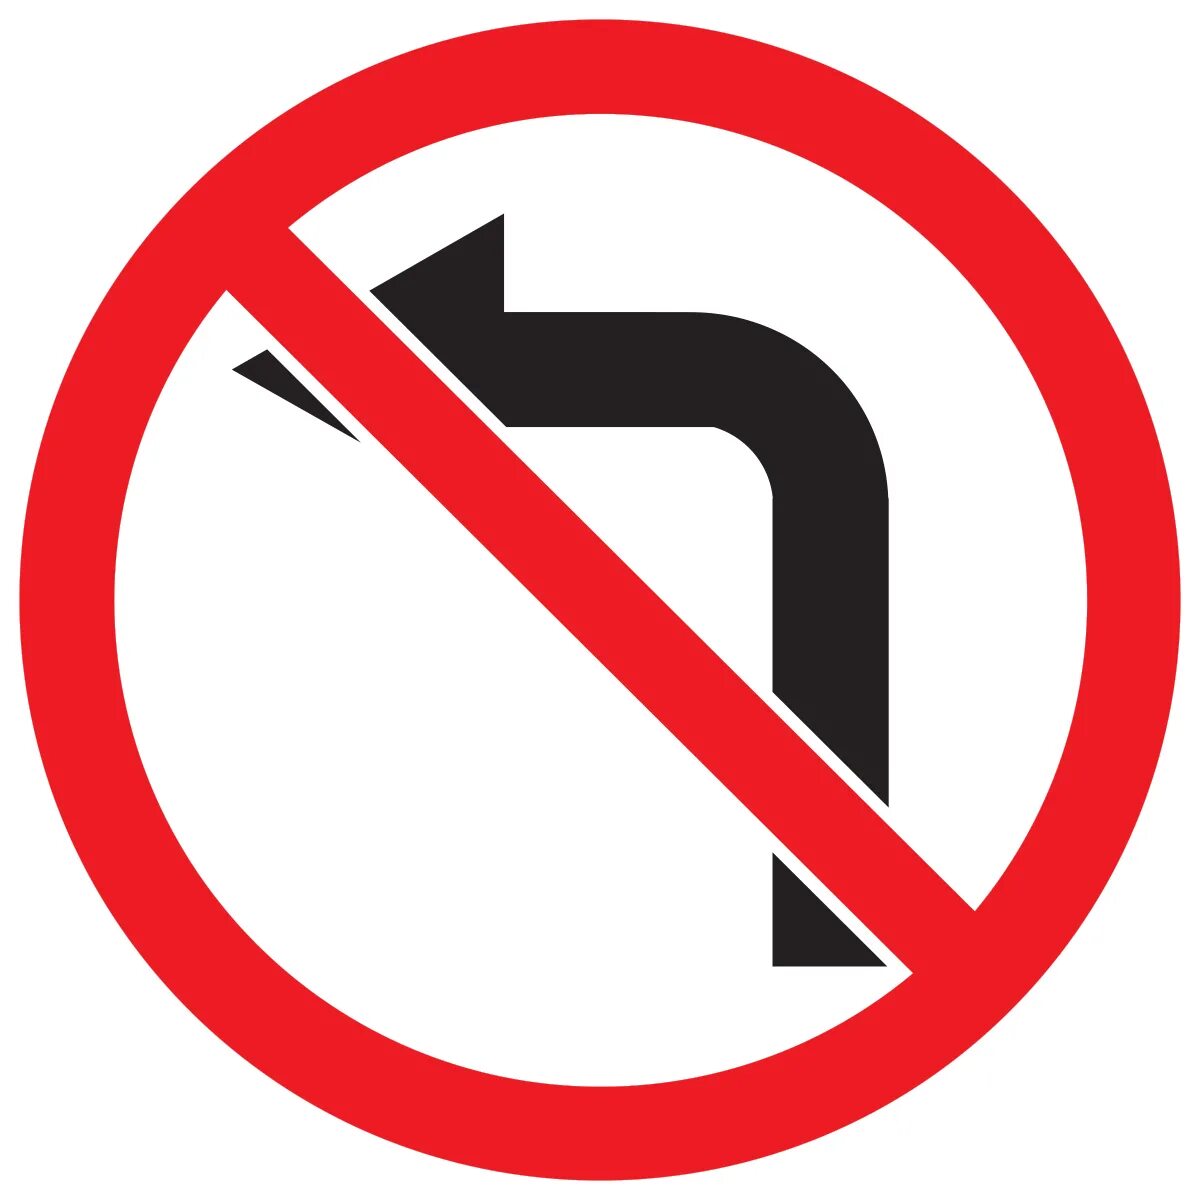 03 18 08 00. Знак 3.18.2. Дорожный знак 3.18.2 поворот налево запрещен. Знак 3.18.2 поворот направо запрещен. Знак 3.18.2 поворот налево запрещен запрещает поворот налево.